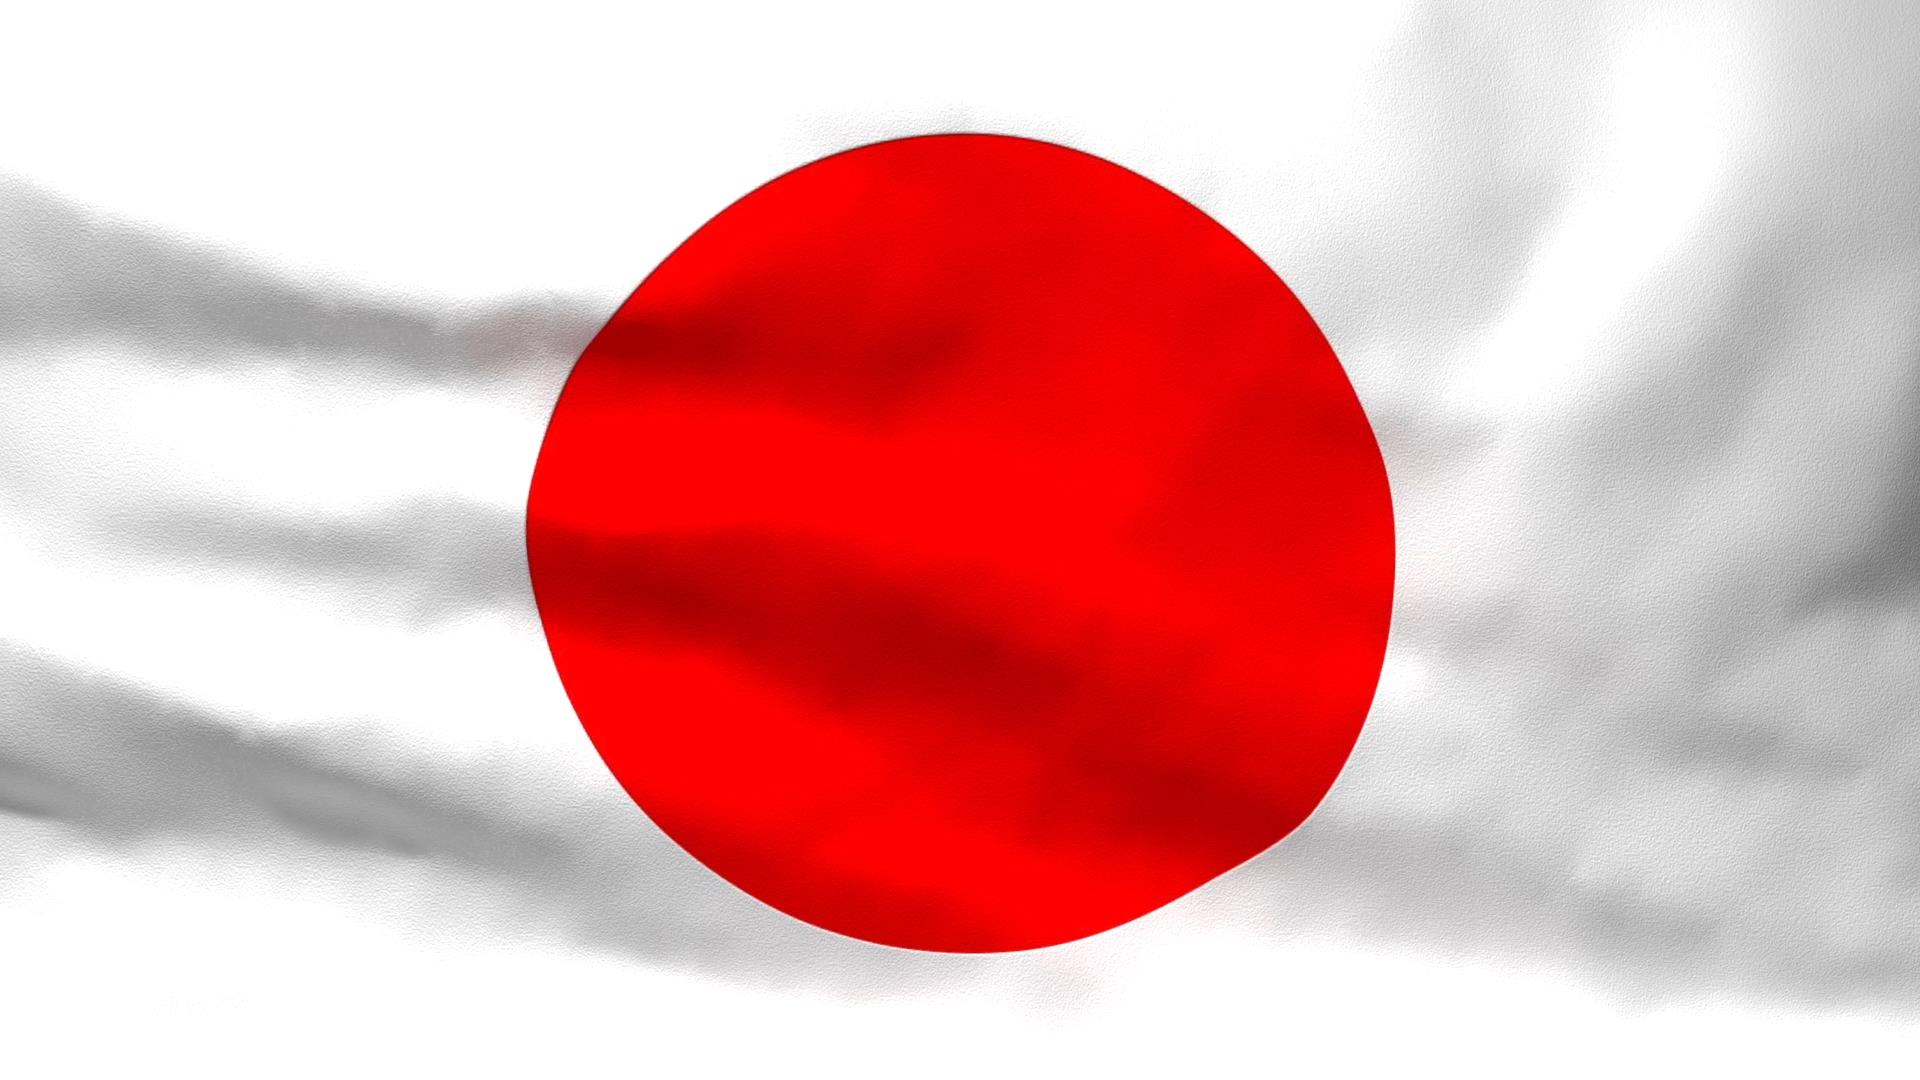 Ý nghĩa và hình ảnh quốc kỳ Nhật Bản là một sự kết hợp hoàn hảo. Nó thể hiện danh giá và sự tự hào của người dân Nhật Bản với đất nước. Biểu tượng này mang ý nghĩa cao đẹp, tín ngưỡng, truyền thống, lịch sử và văn hóa. Hãy xem hình ảnh quốc kỳ Nhật Bản để cảm nhận sự trang trọng và đẹp đẽ của biểu tượng quốc gia này.